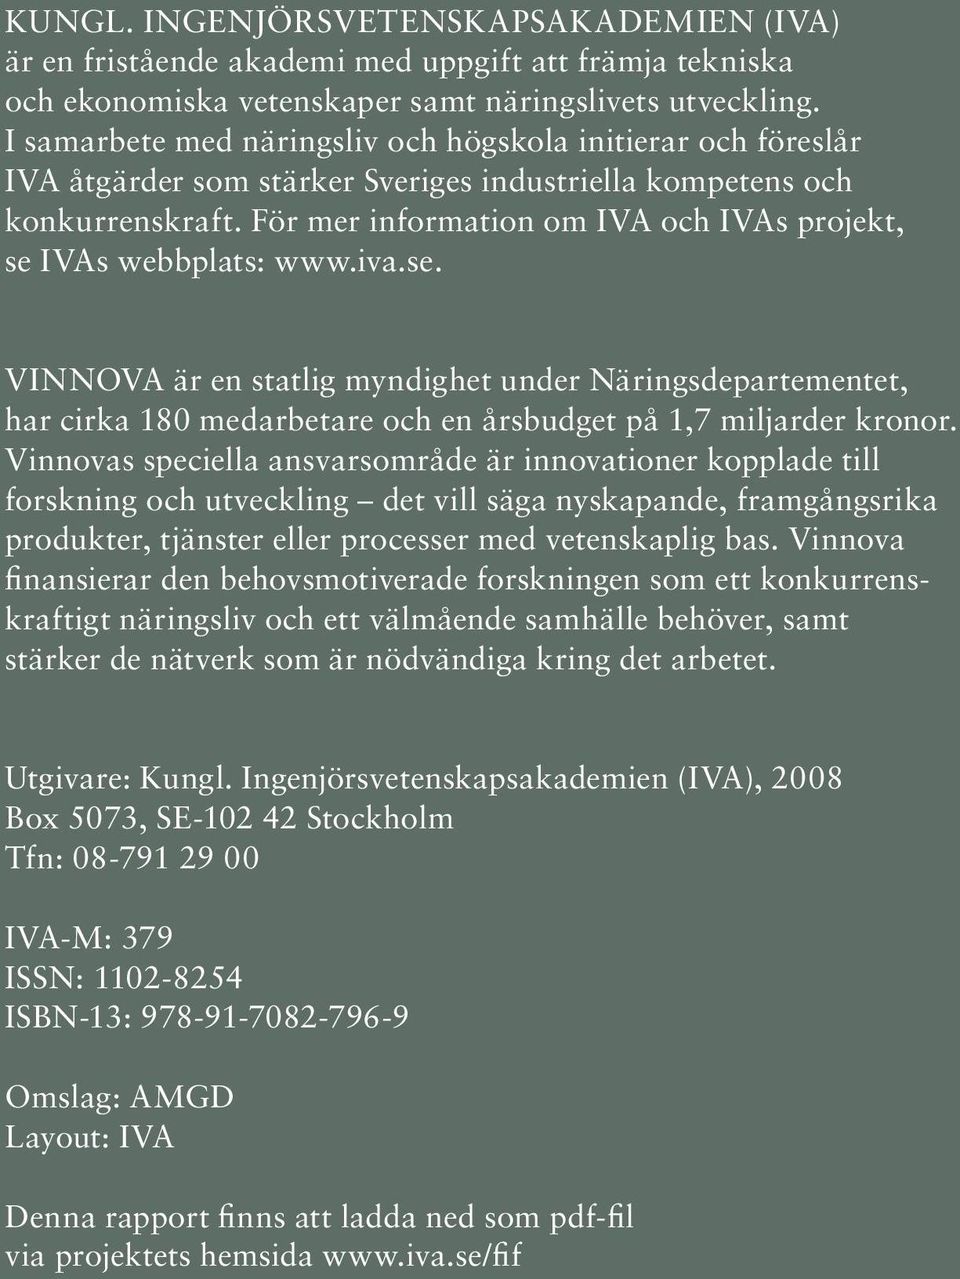 För mer information om IVA och IVAs projekt, se IVAs webbplats: www.iva.se. VINNOVA är en statlig myndighet under Näringsdepartementet, har cirka 180 medarbetare och en årsbudget på 1,7 miljarder kronor.